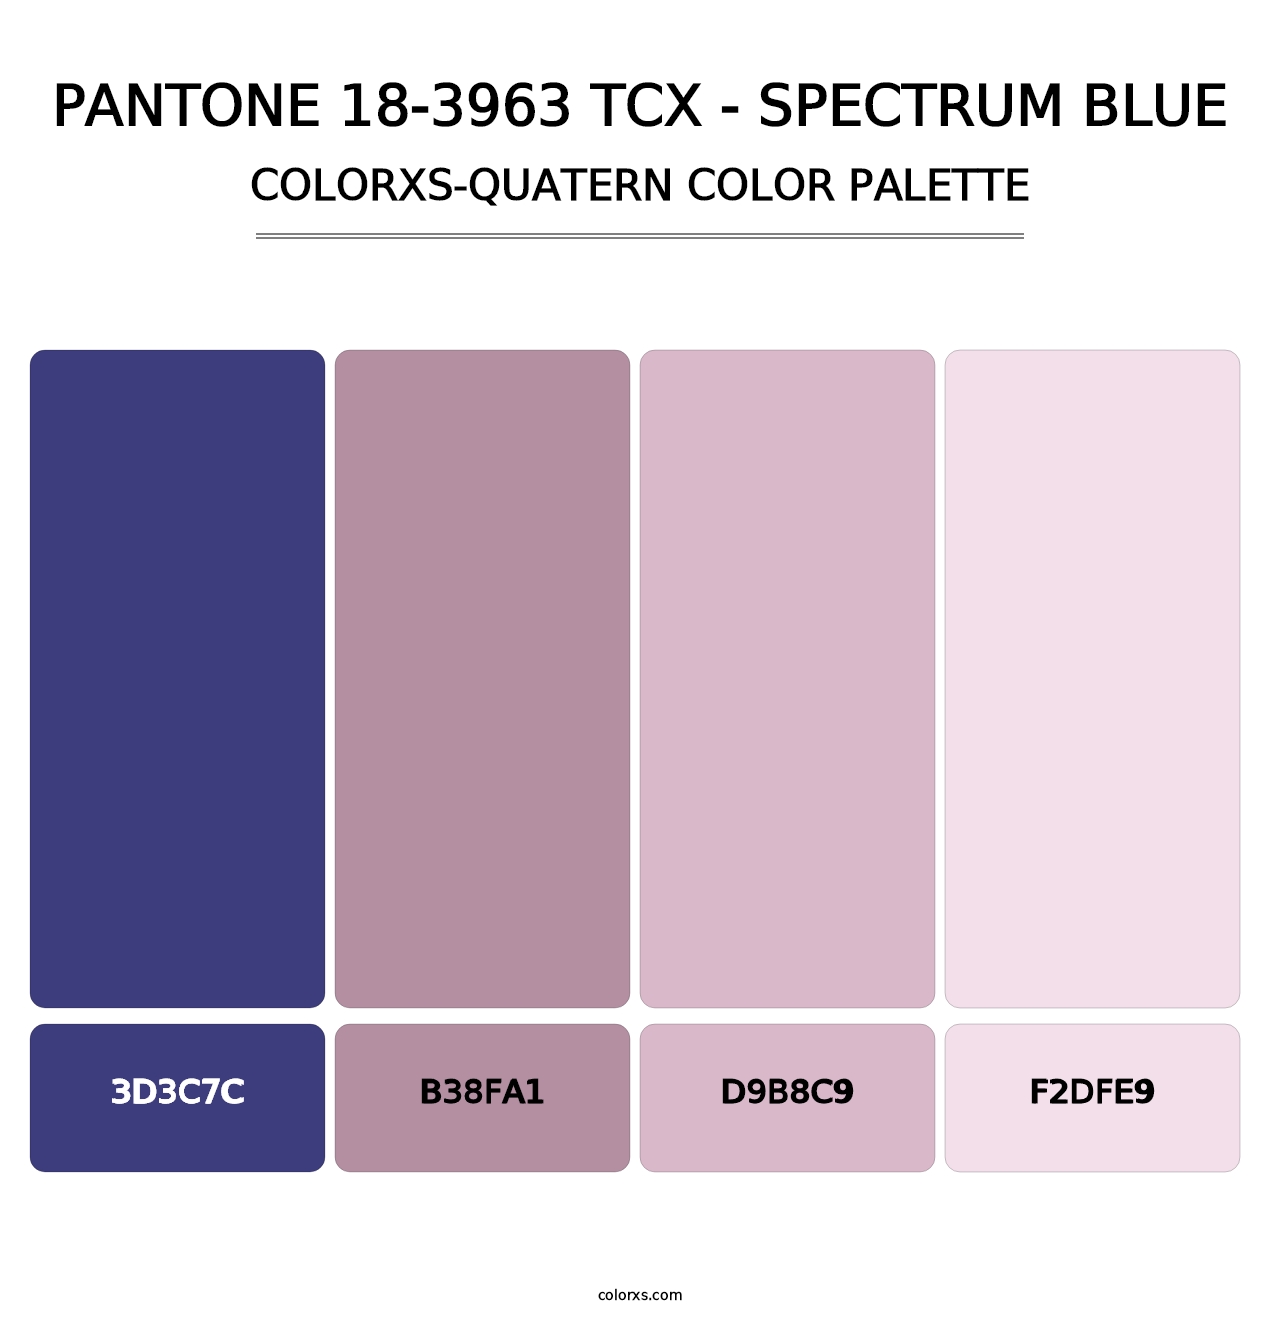 PANTONE 18-3963 TCX - Spectrum Blue - Colorxs Quatern Palette